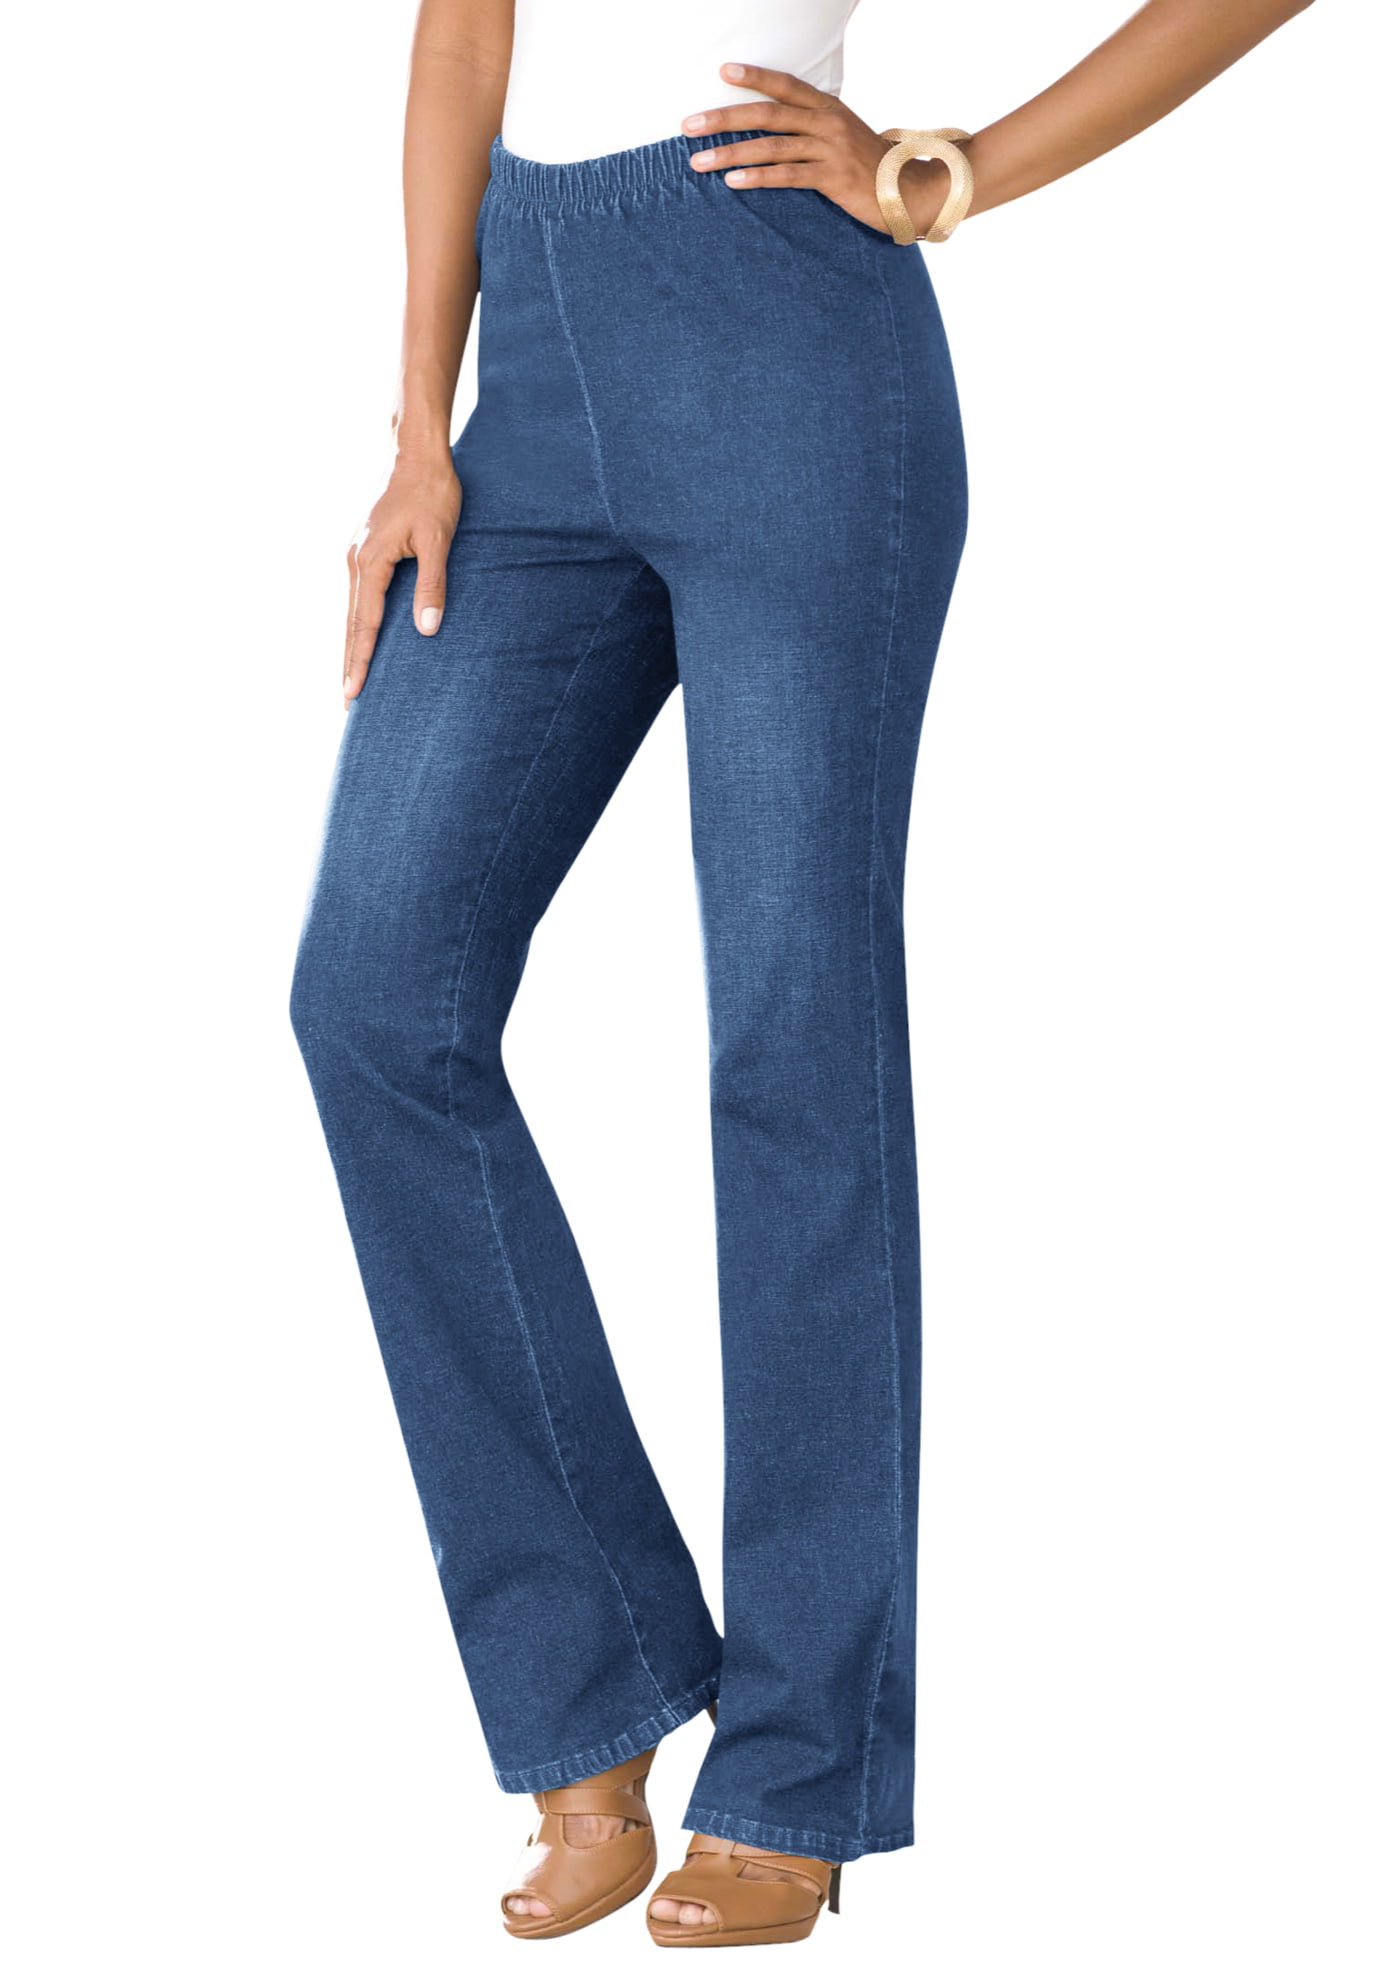 walmart stretch jeans womens